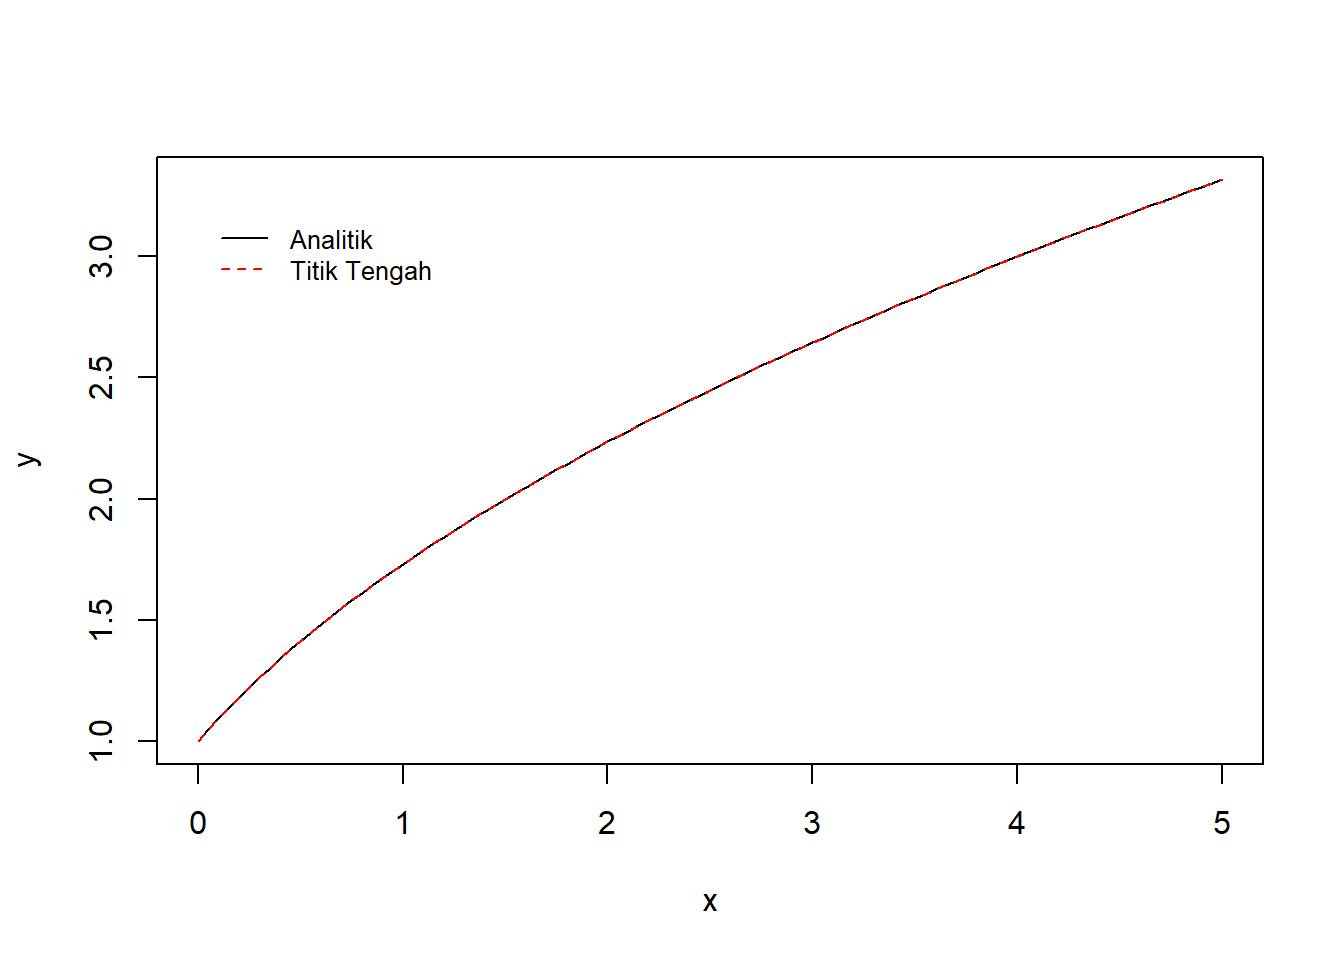 Visualisasi integrasi numerik dengan metode titik tengah dan metode analitik